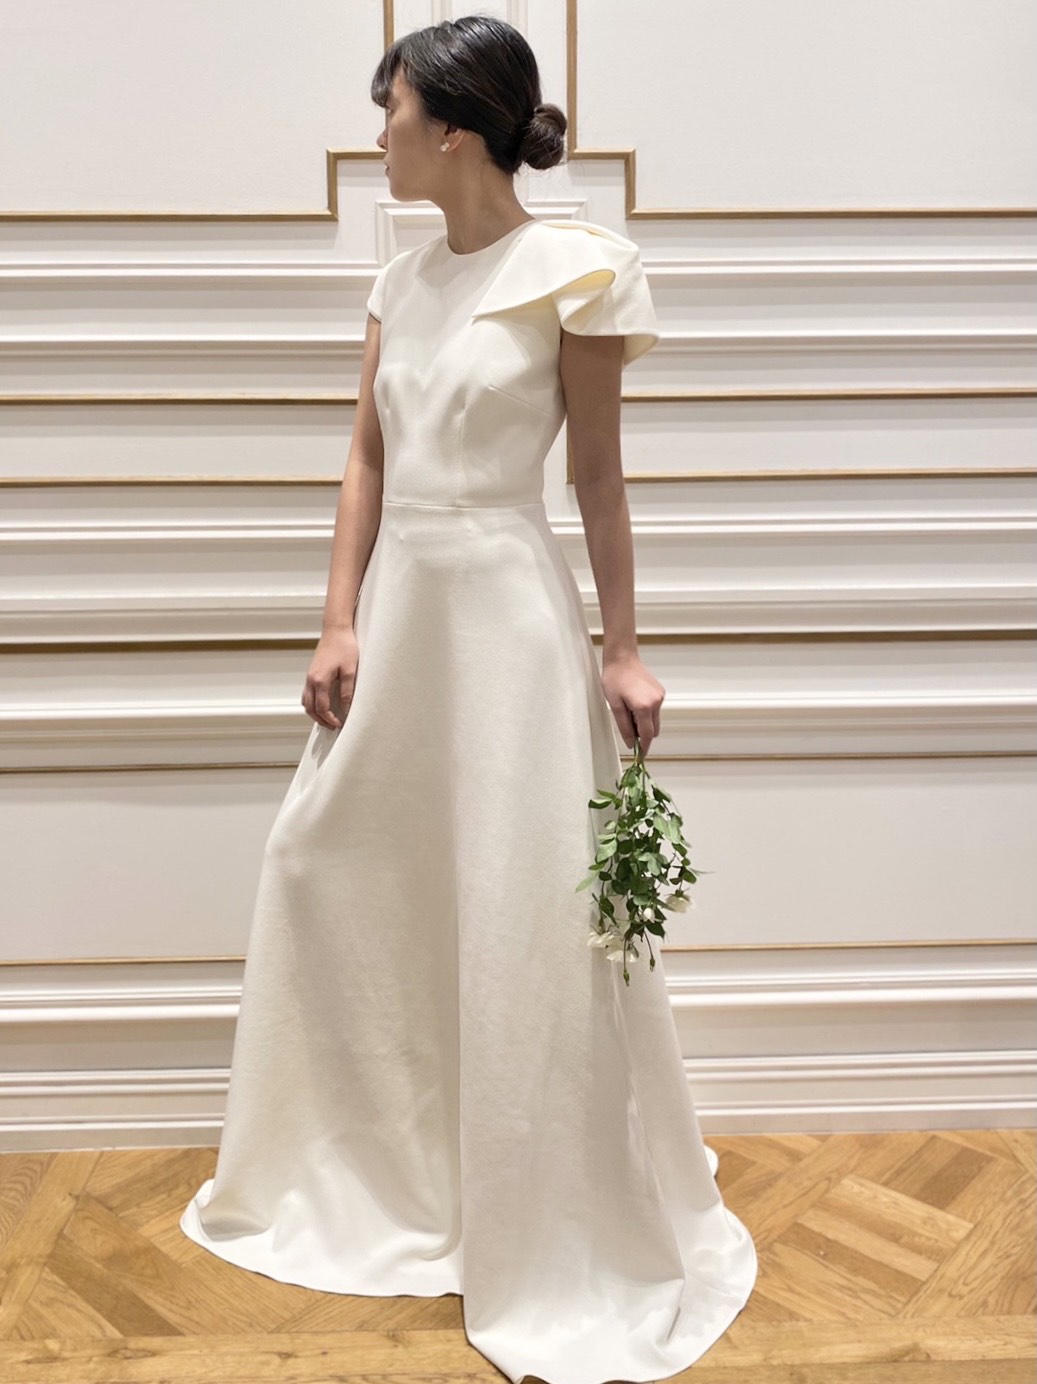 THE TREAT DRESSINGがアットホームな結婚式をイメージの花嫁様にお届けしたいウェディングドレス